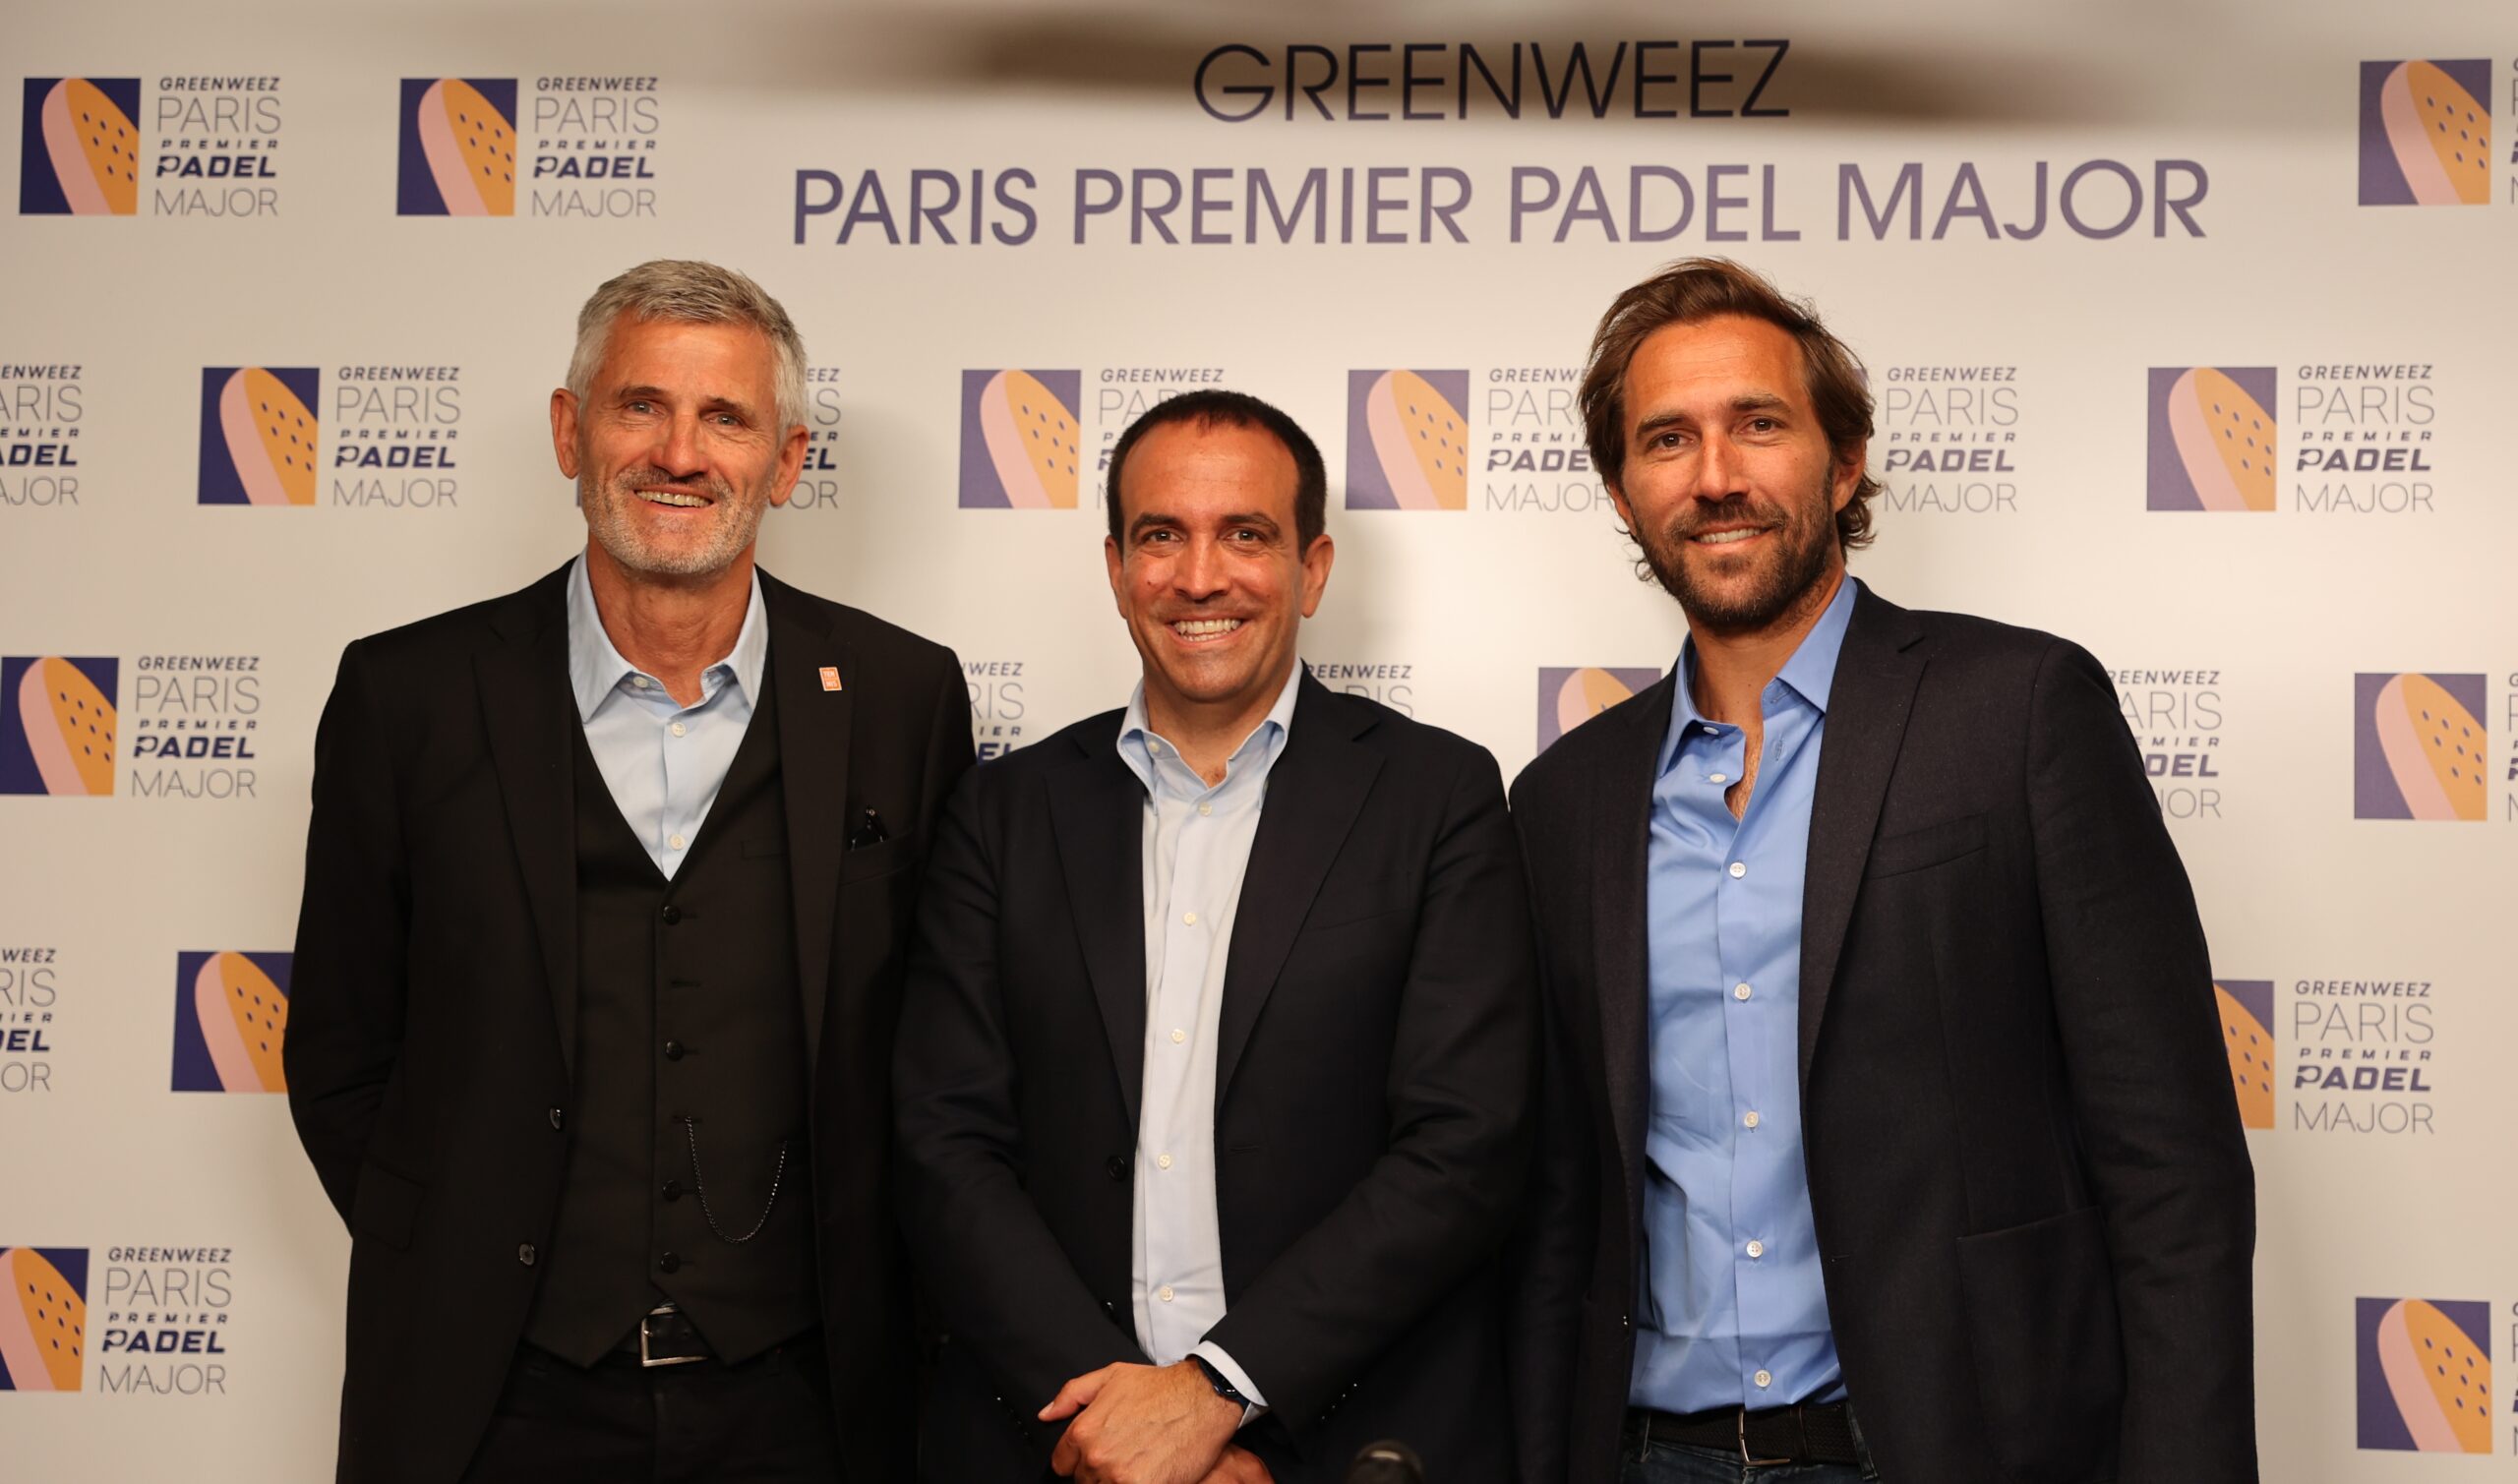 Roland-Garros-stadion on valmis ottamaan vastaan Greenweez Paris Premier Padel Major